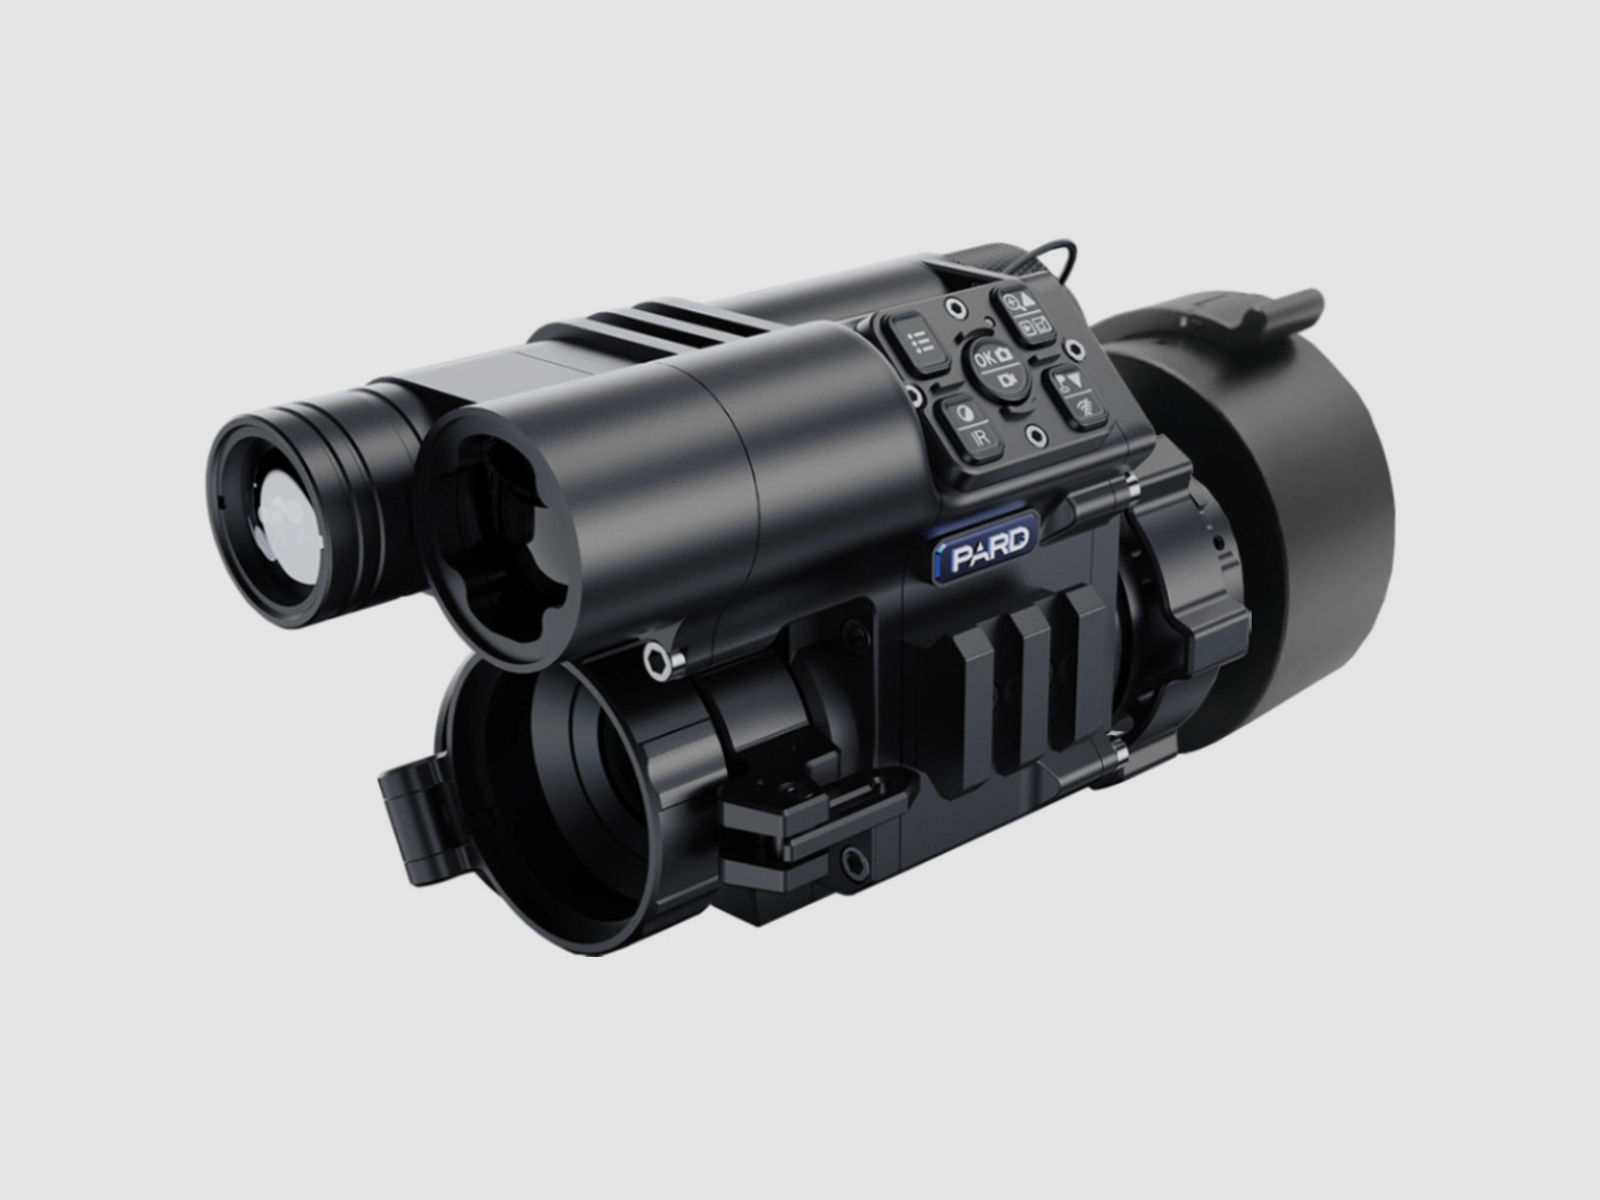 PARD FD1 Nachtsicht 3 in 1 Vorsatz, Monokular & Zielfernrohr - 850 nm mit LRF 62 - 46 mm PARD Universaladapter (inkl. Reduzierringen)